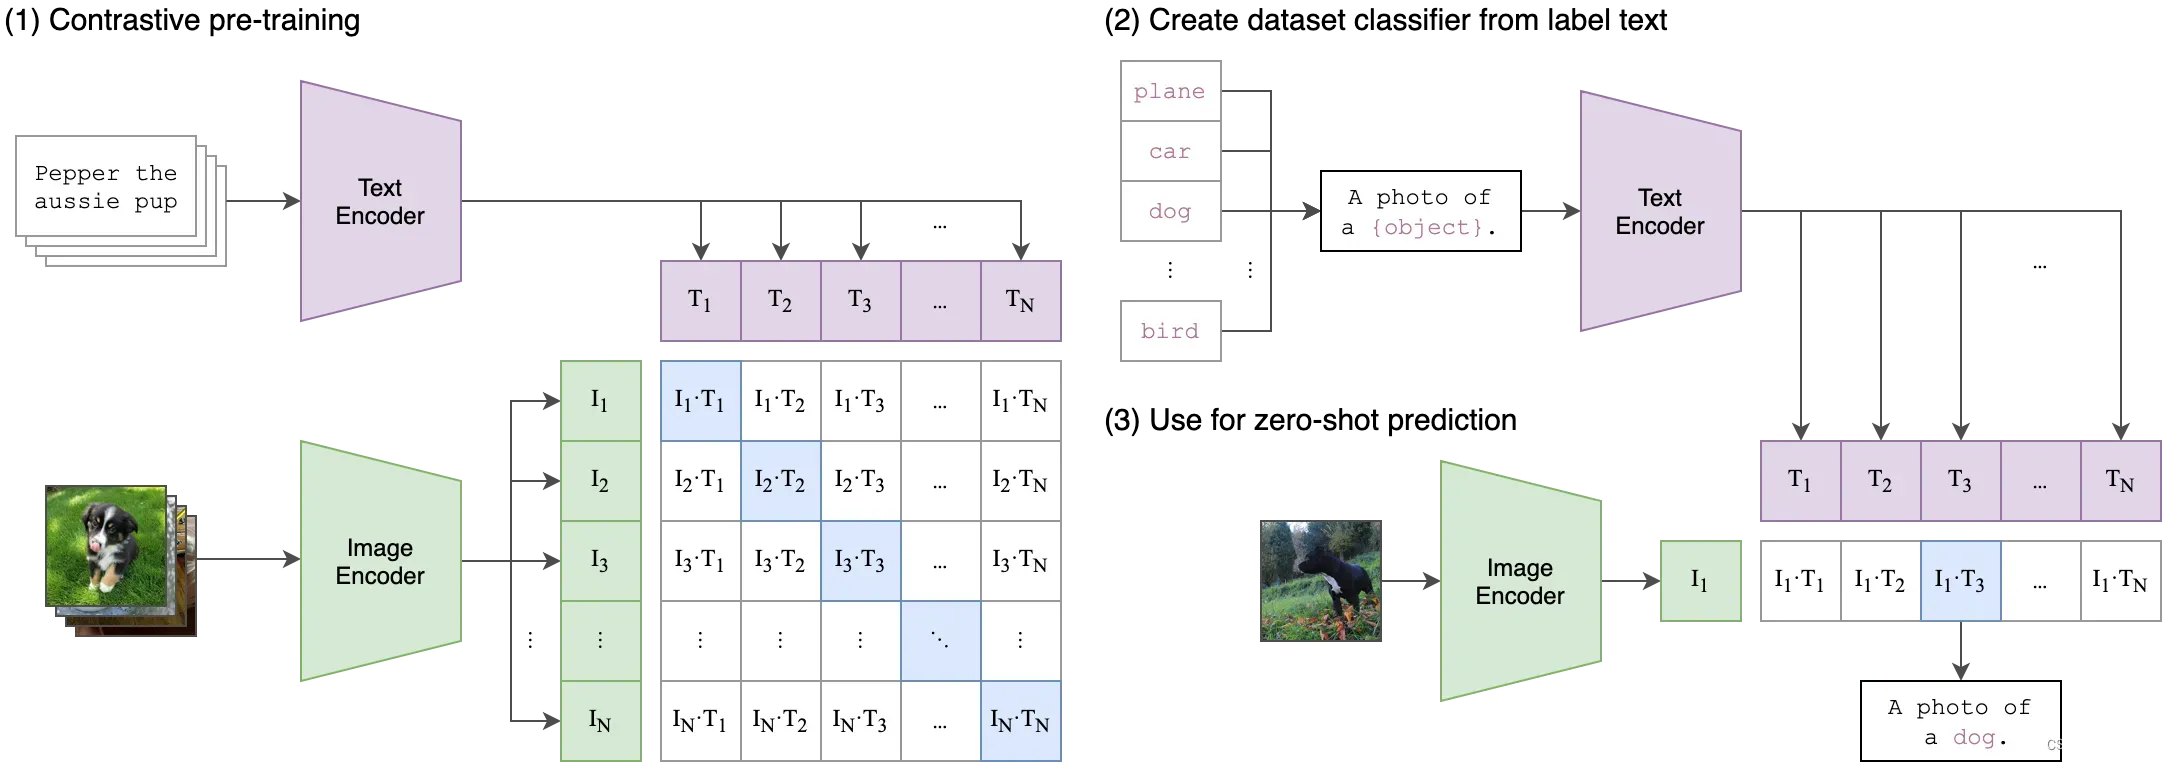 【论文简介】CLIP：图像与自然语言配对预训练可迁移模型：Learning Transferable Visual Models From Natural Language Supervision